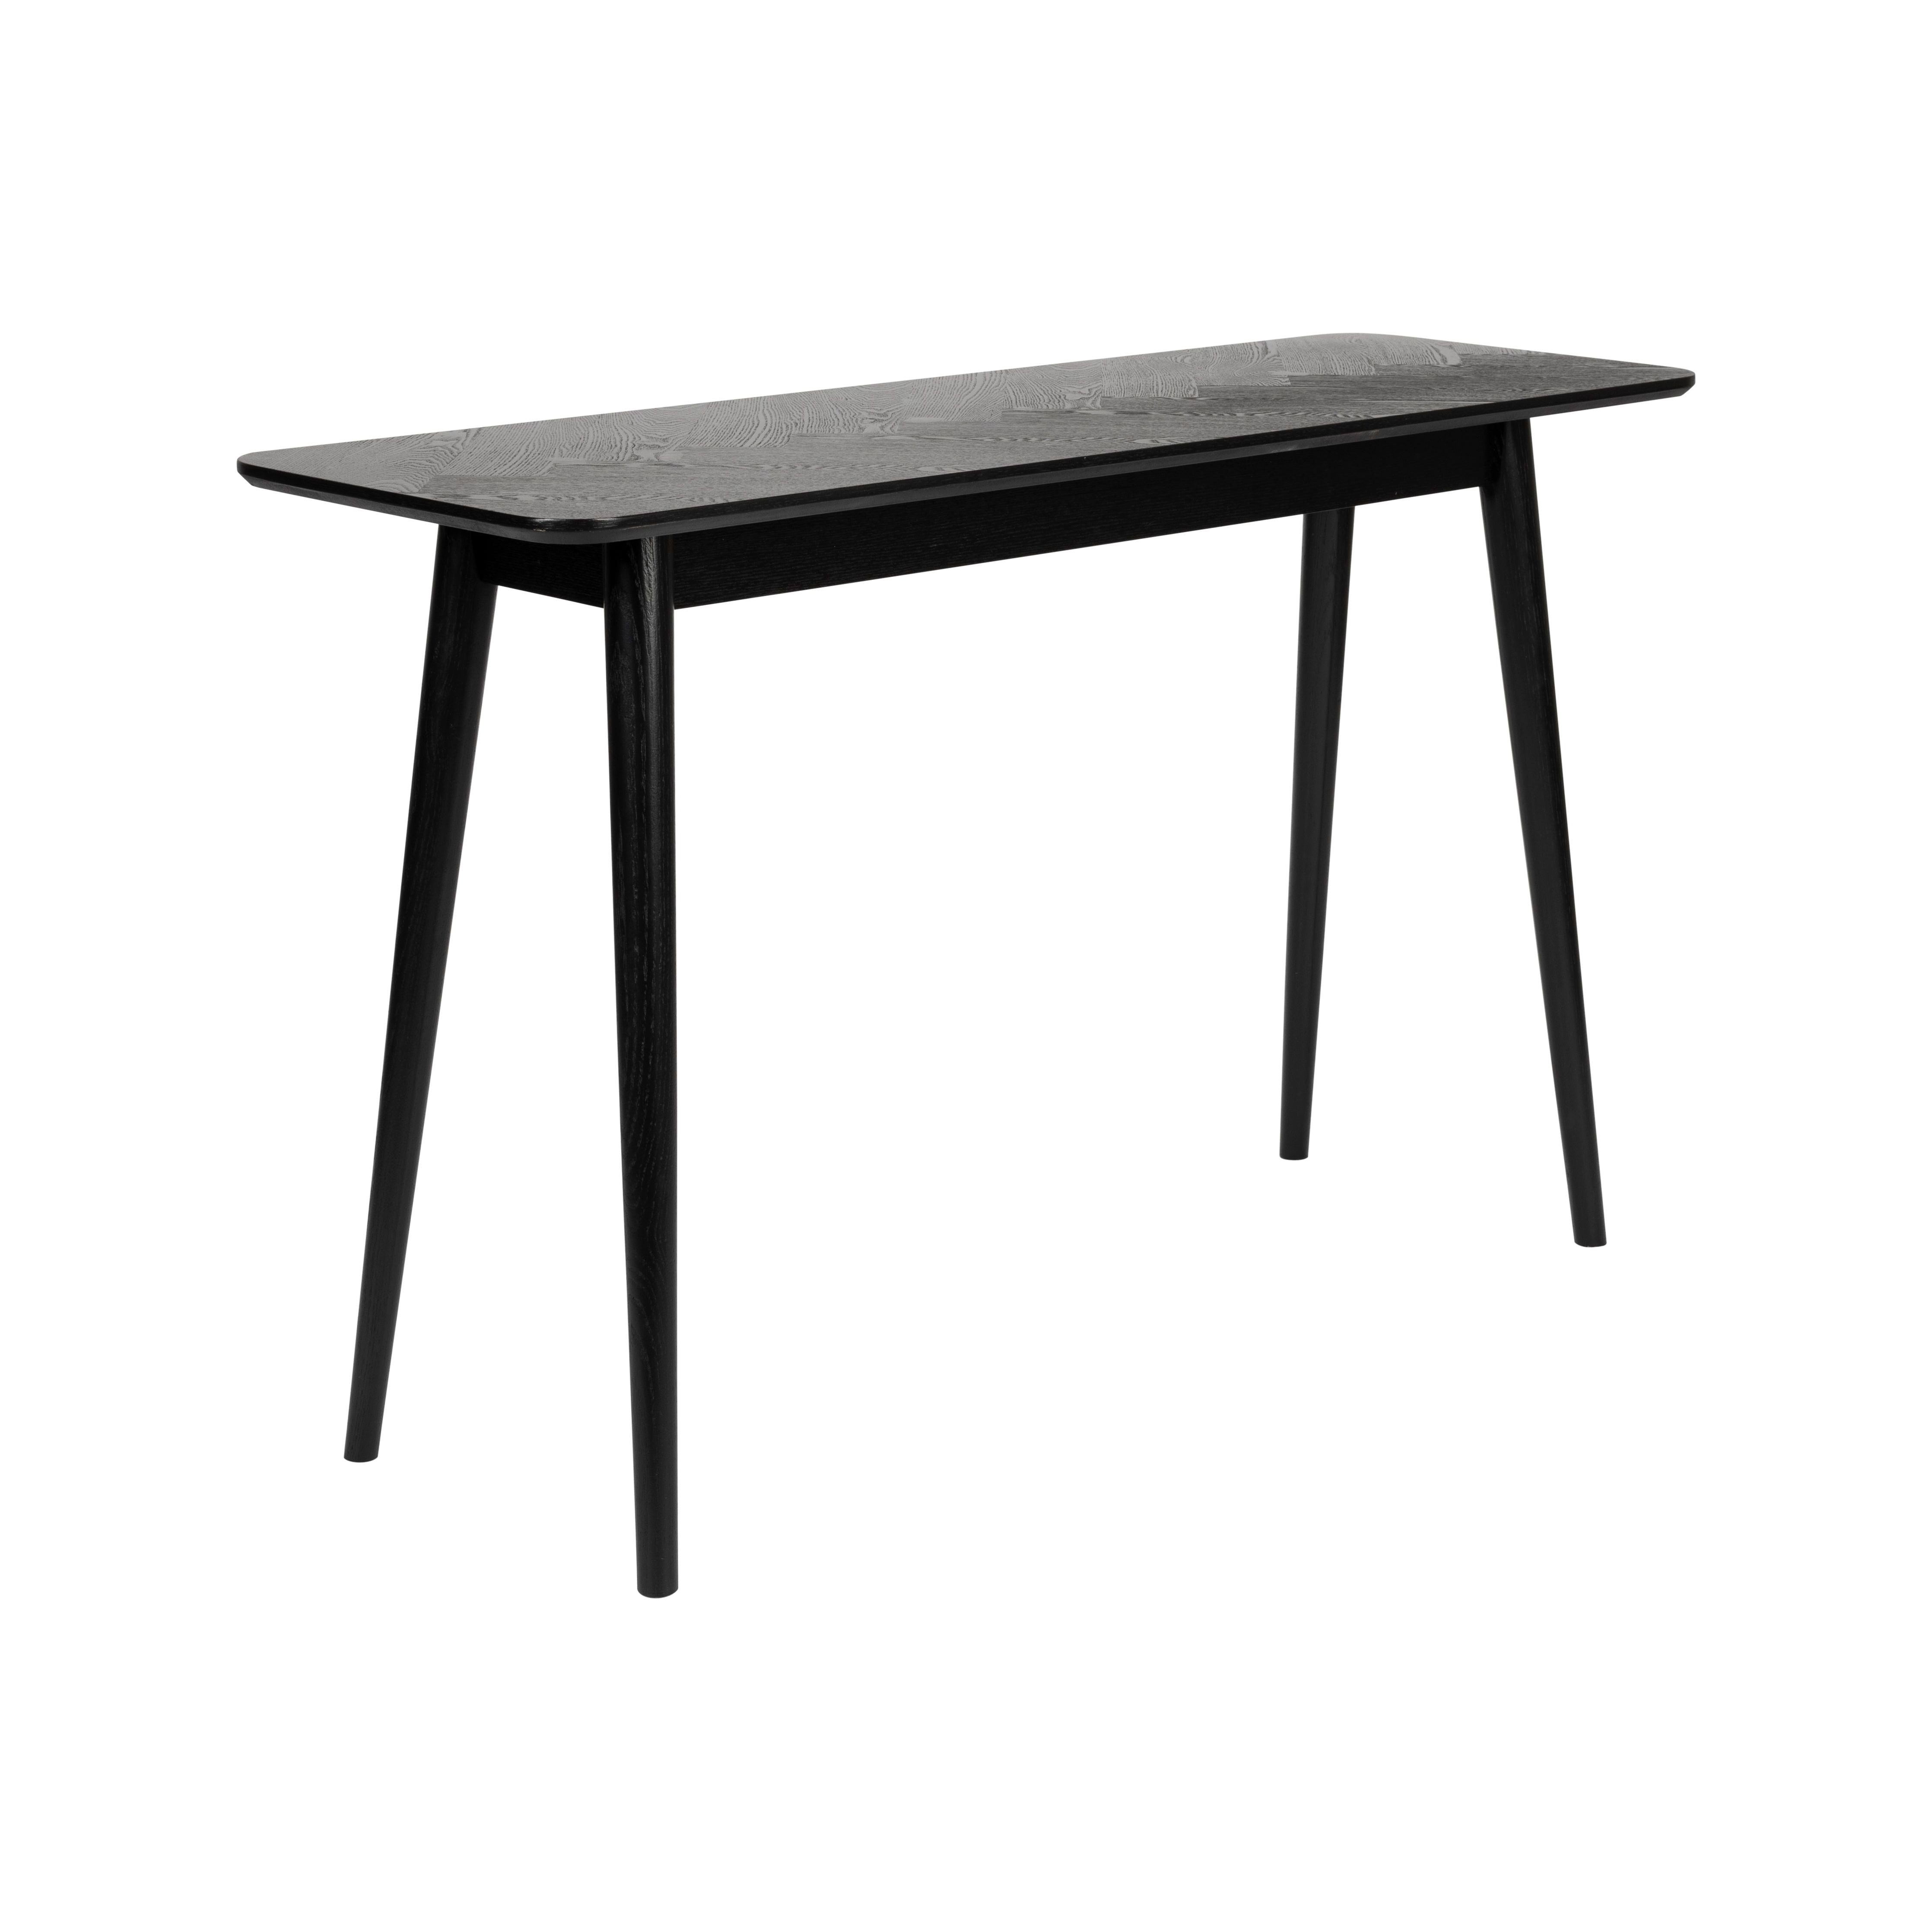 Console table fabio 120x40 black